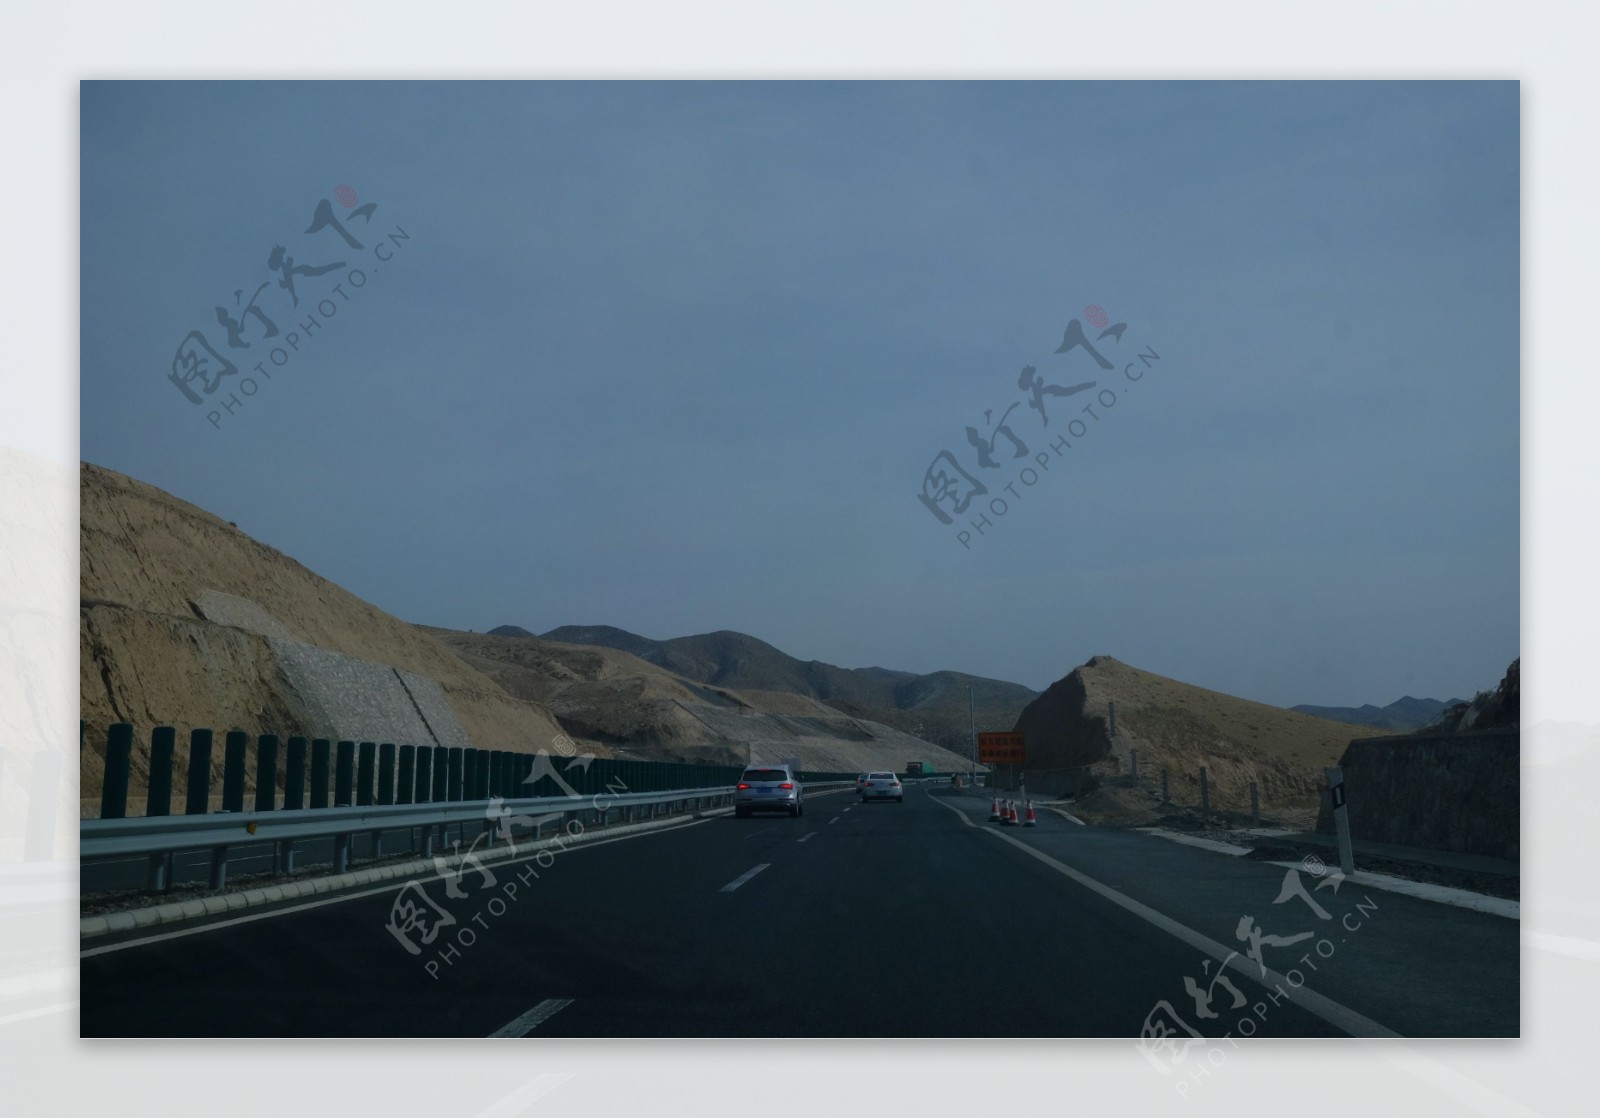 新疆高速路